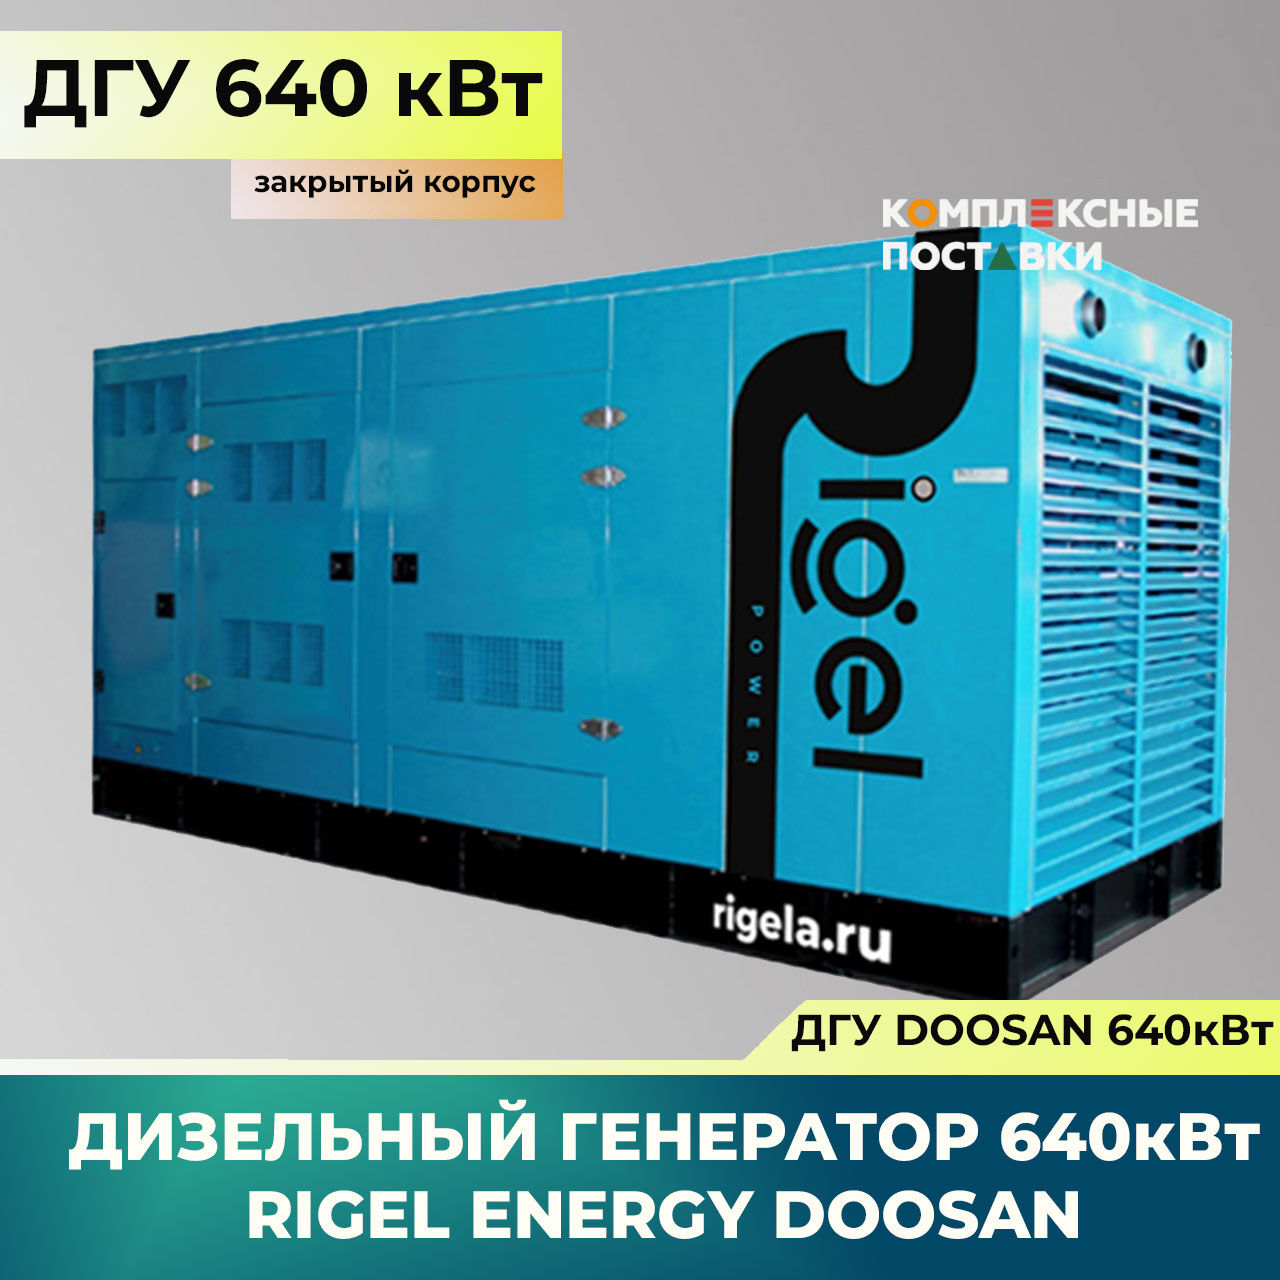 ДГУ 640кВт Doosan Дизель-генератор Rigel Energy Doosan RED 640(640 кВт, Doosan) закрытый